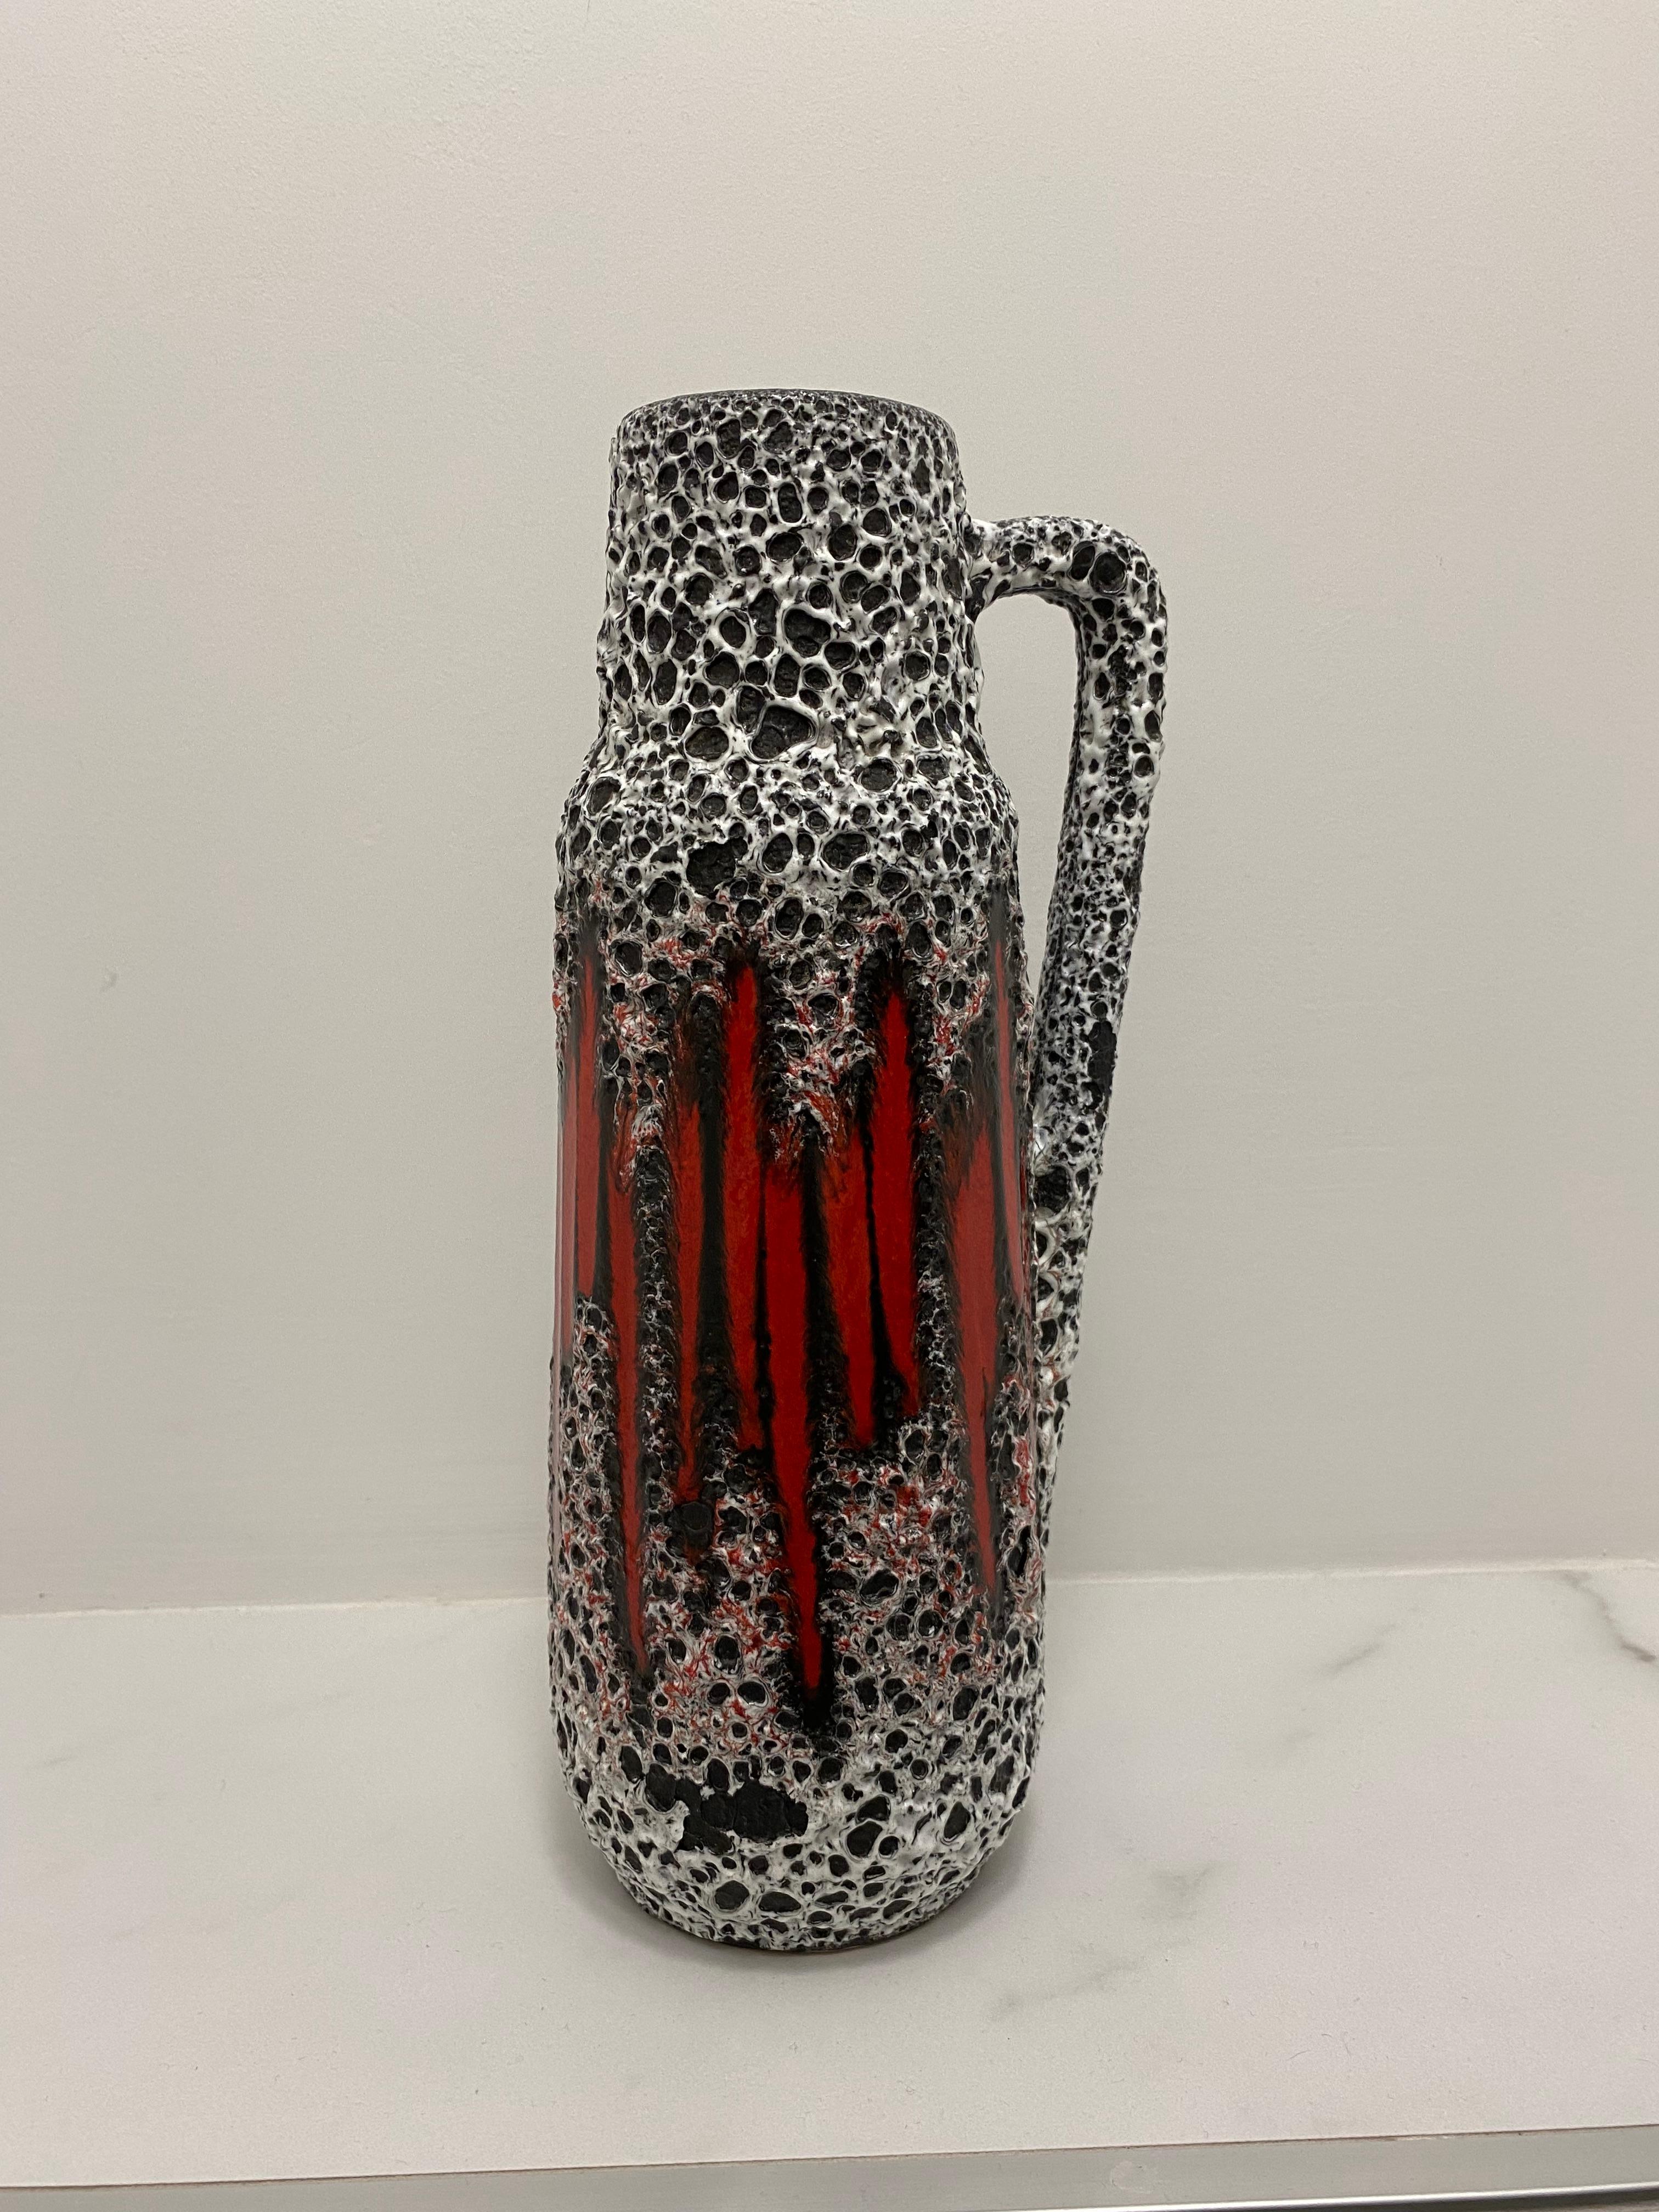 A sought after Fat Lava vase by Scheurich Keramik. 

